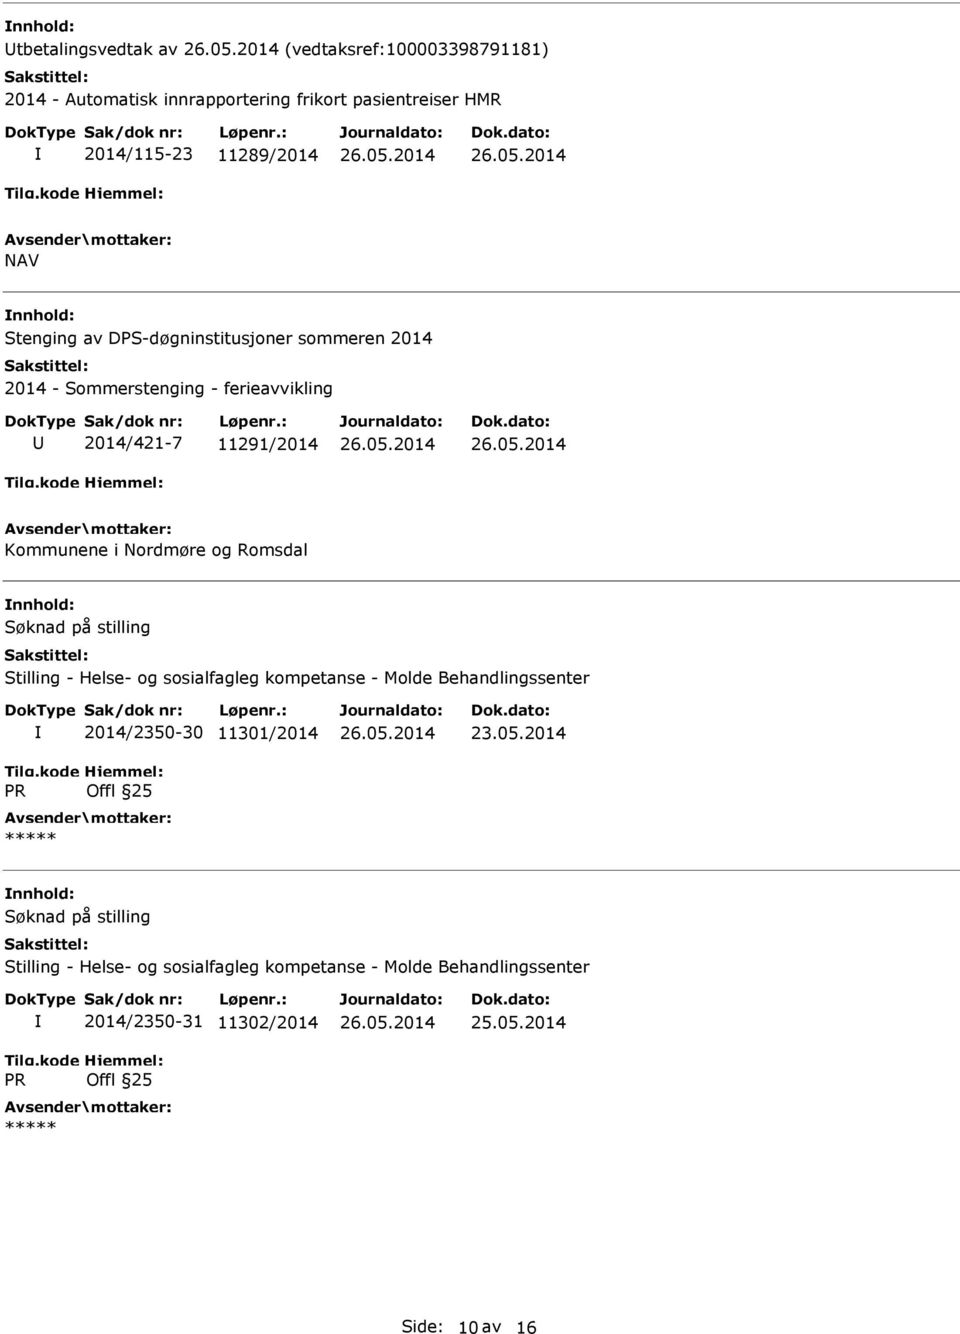 Søknad på stilling Stilling - Helse- og sosialfagleg kompetanse - Molde Behandlingssenter R 2014/2350-30 11301/2014 Offl 25 23.05.